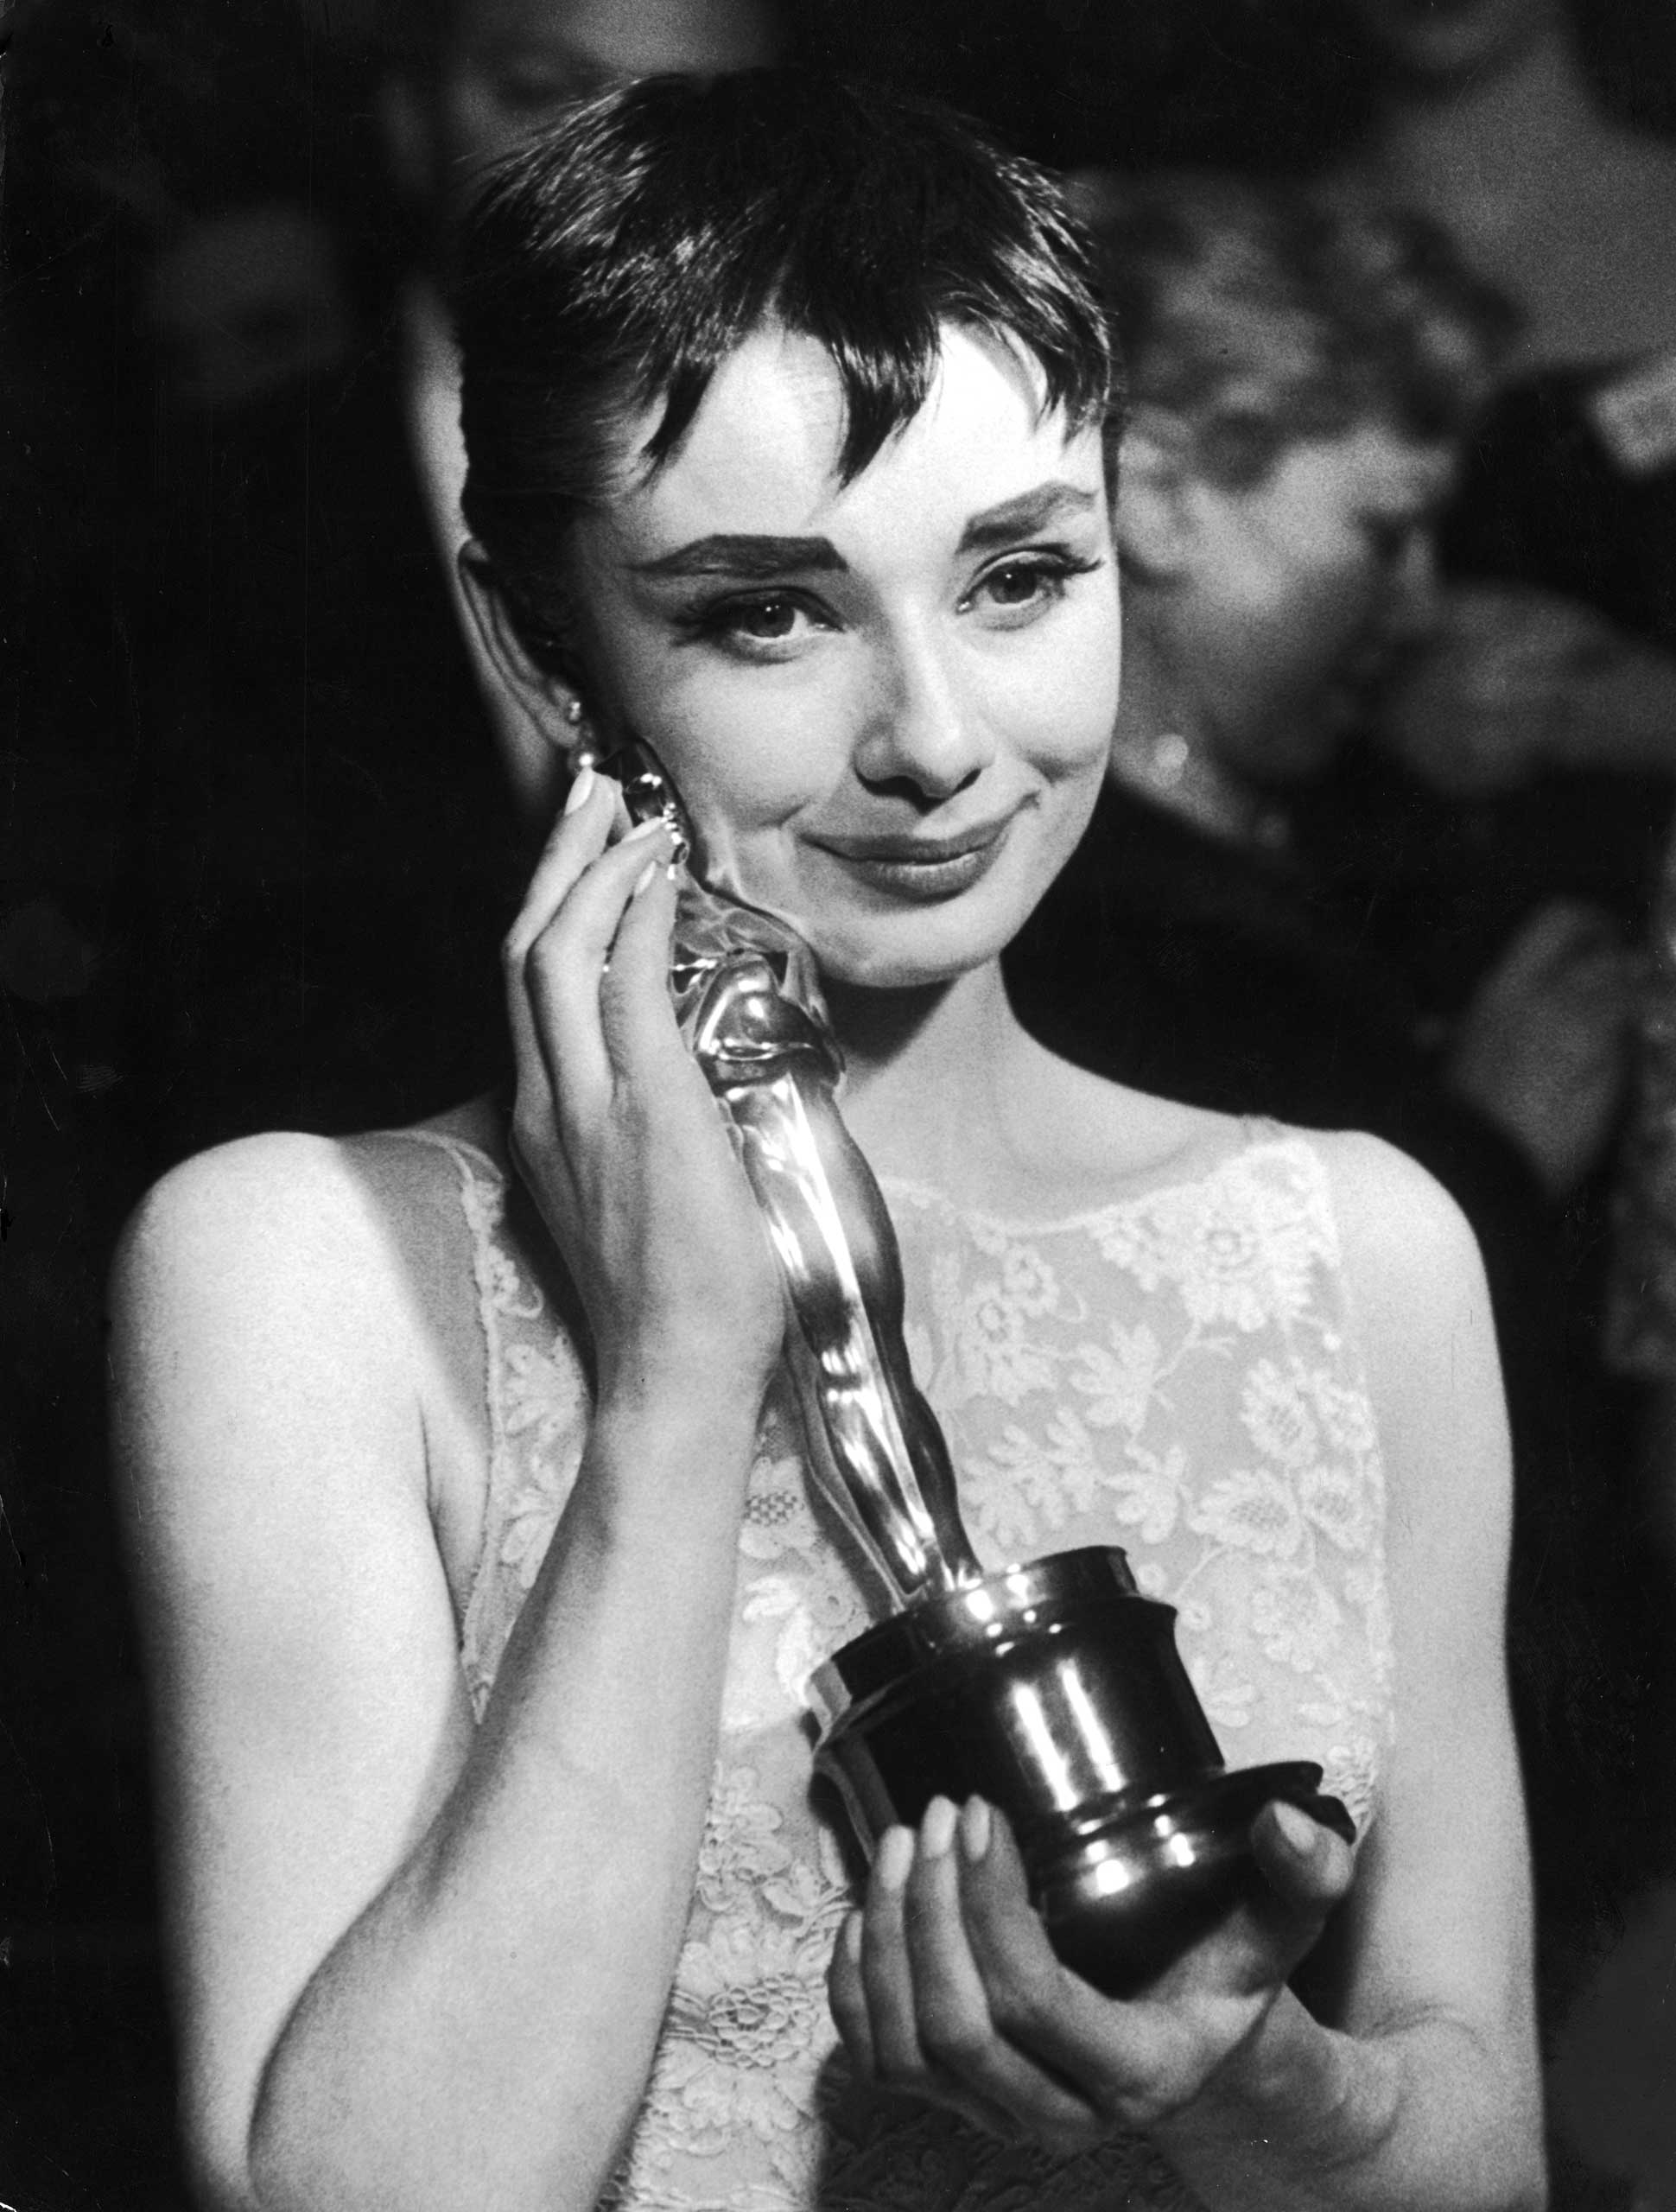 Academy Awards: Classic Film Stars With Their Oscars